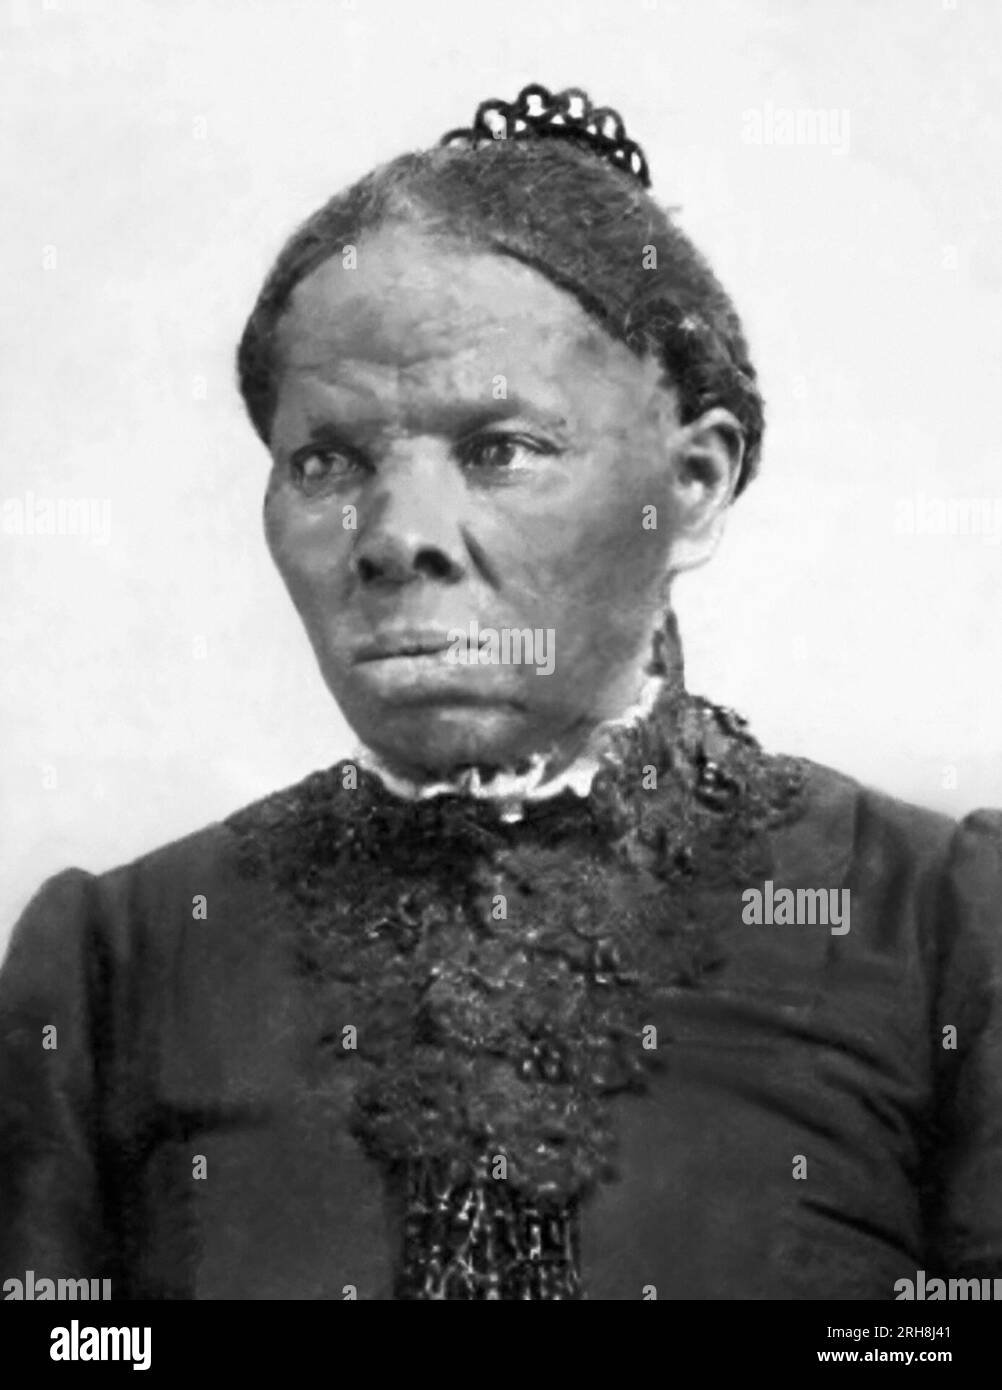 Harriet Tubman (1822-1913), amerikanischer Sklave und Sklave, der Dirigent der Underground Railroad war. Tubman diente während des Amerikanischen Bürgerkriegs auch als bewaffneter Späher und Spion für die Union Army. Stockfoto